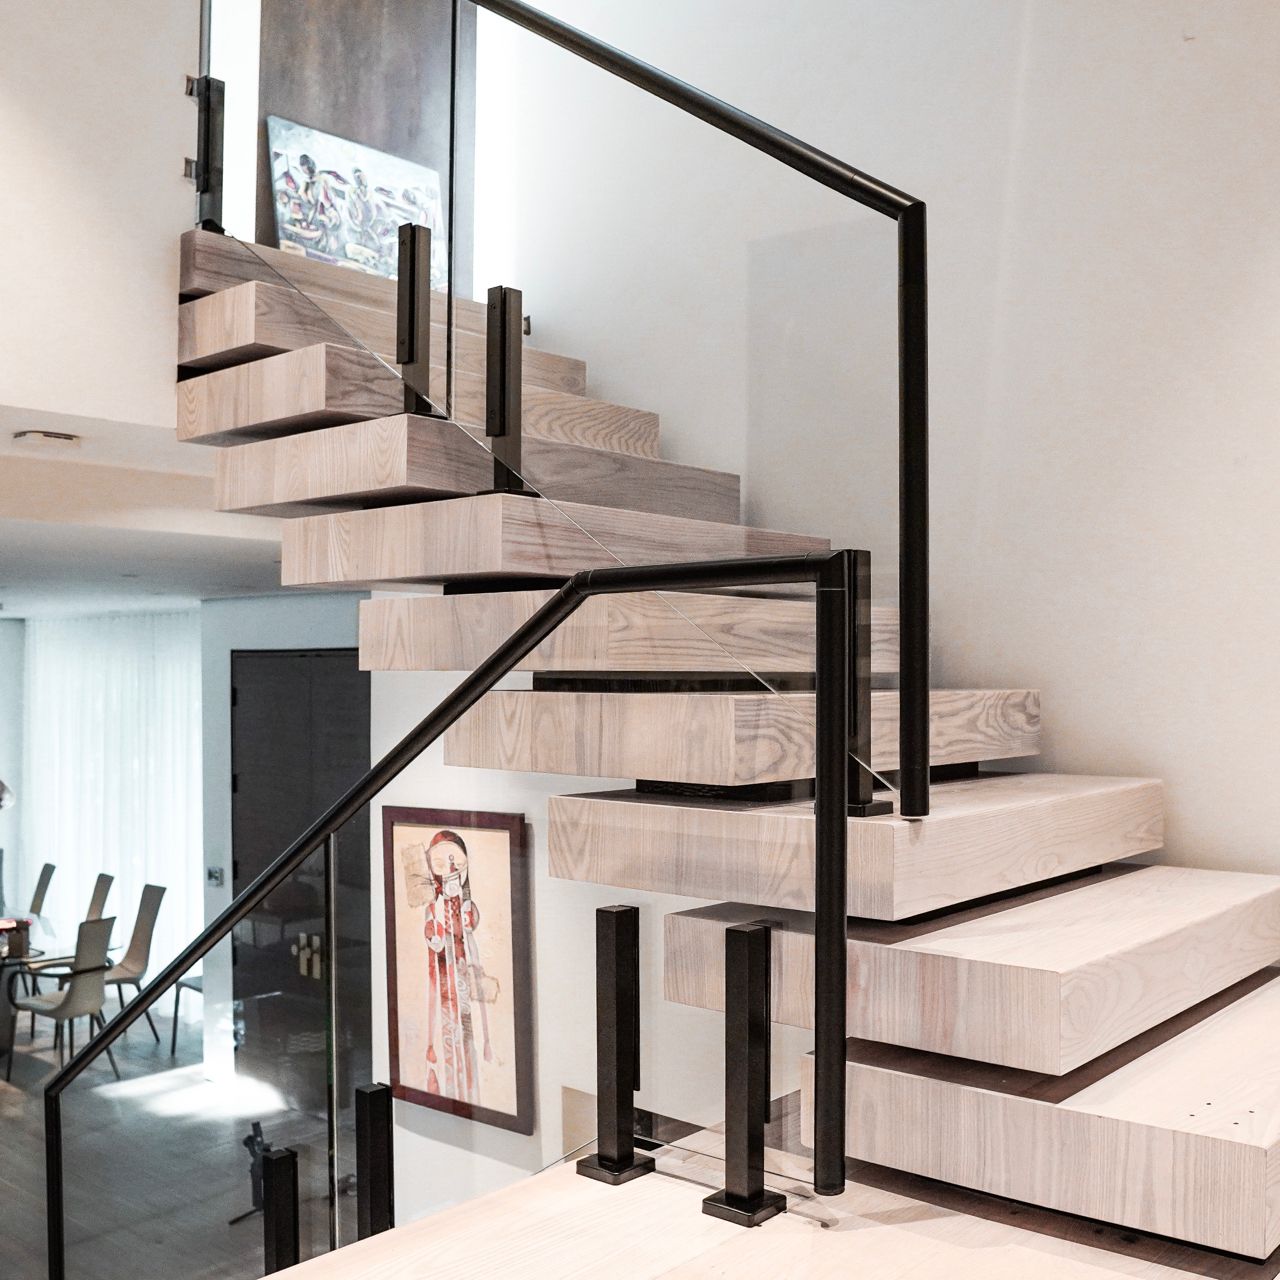 Moderni ruostumattomasta teräksestä valmistettu lasikaite Baluster Post portaita/ ruostumattomasta teräksestä valmistettujen portaiden kaivonvalmistaja